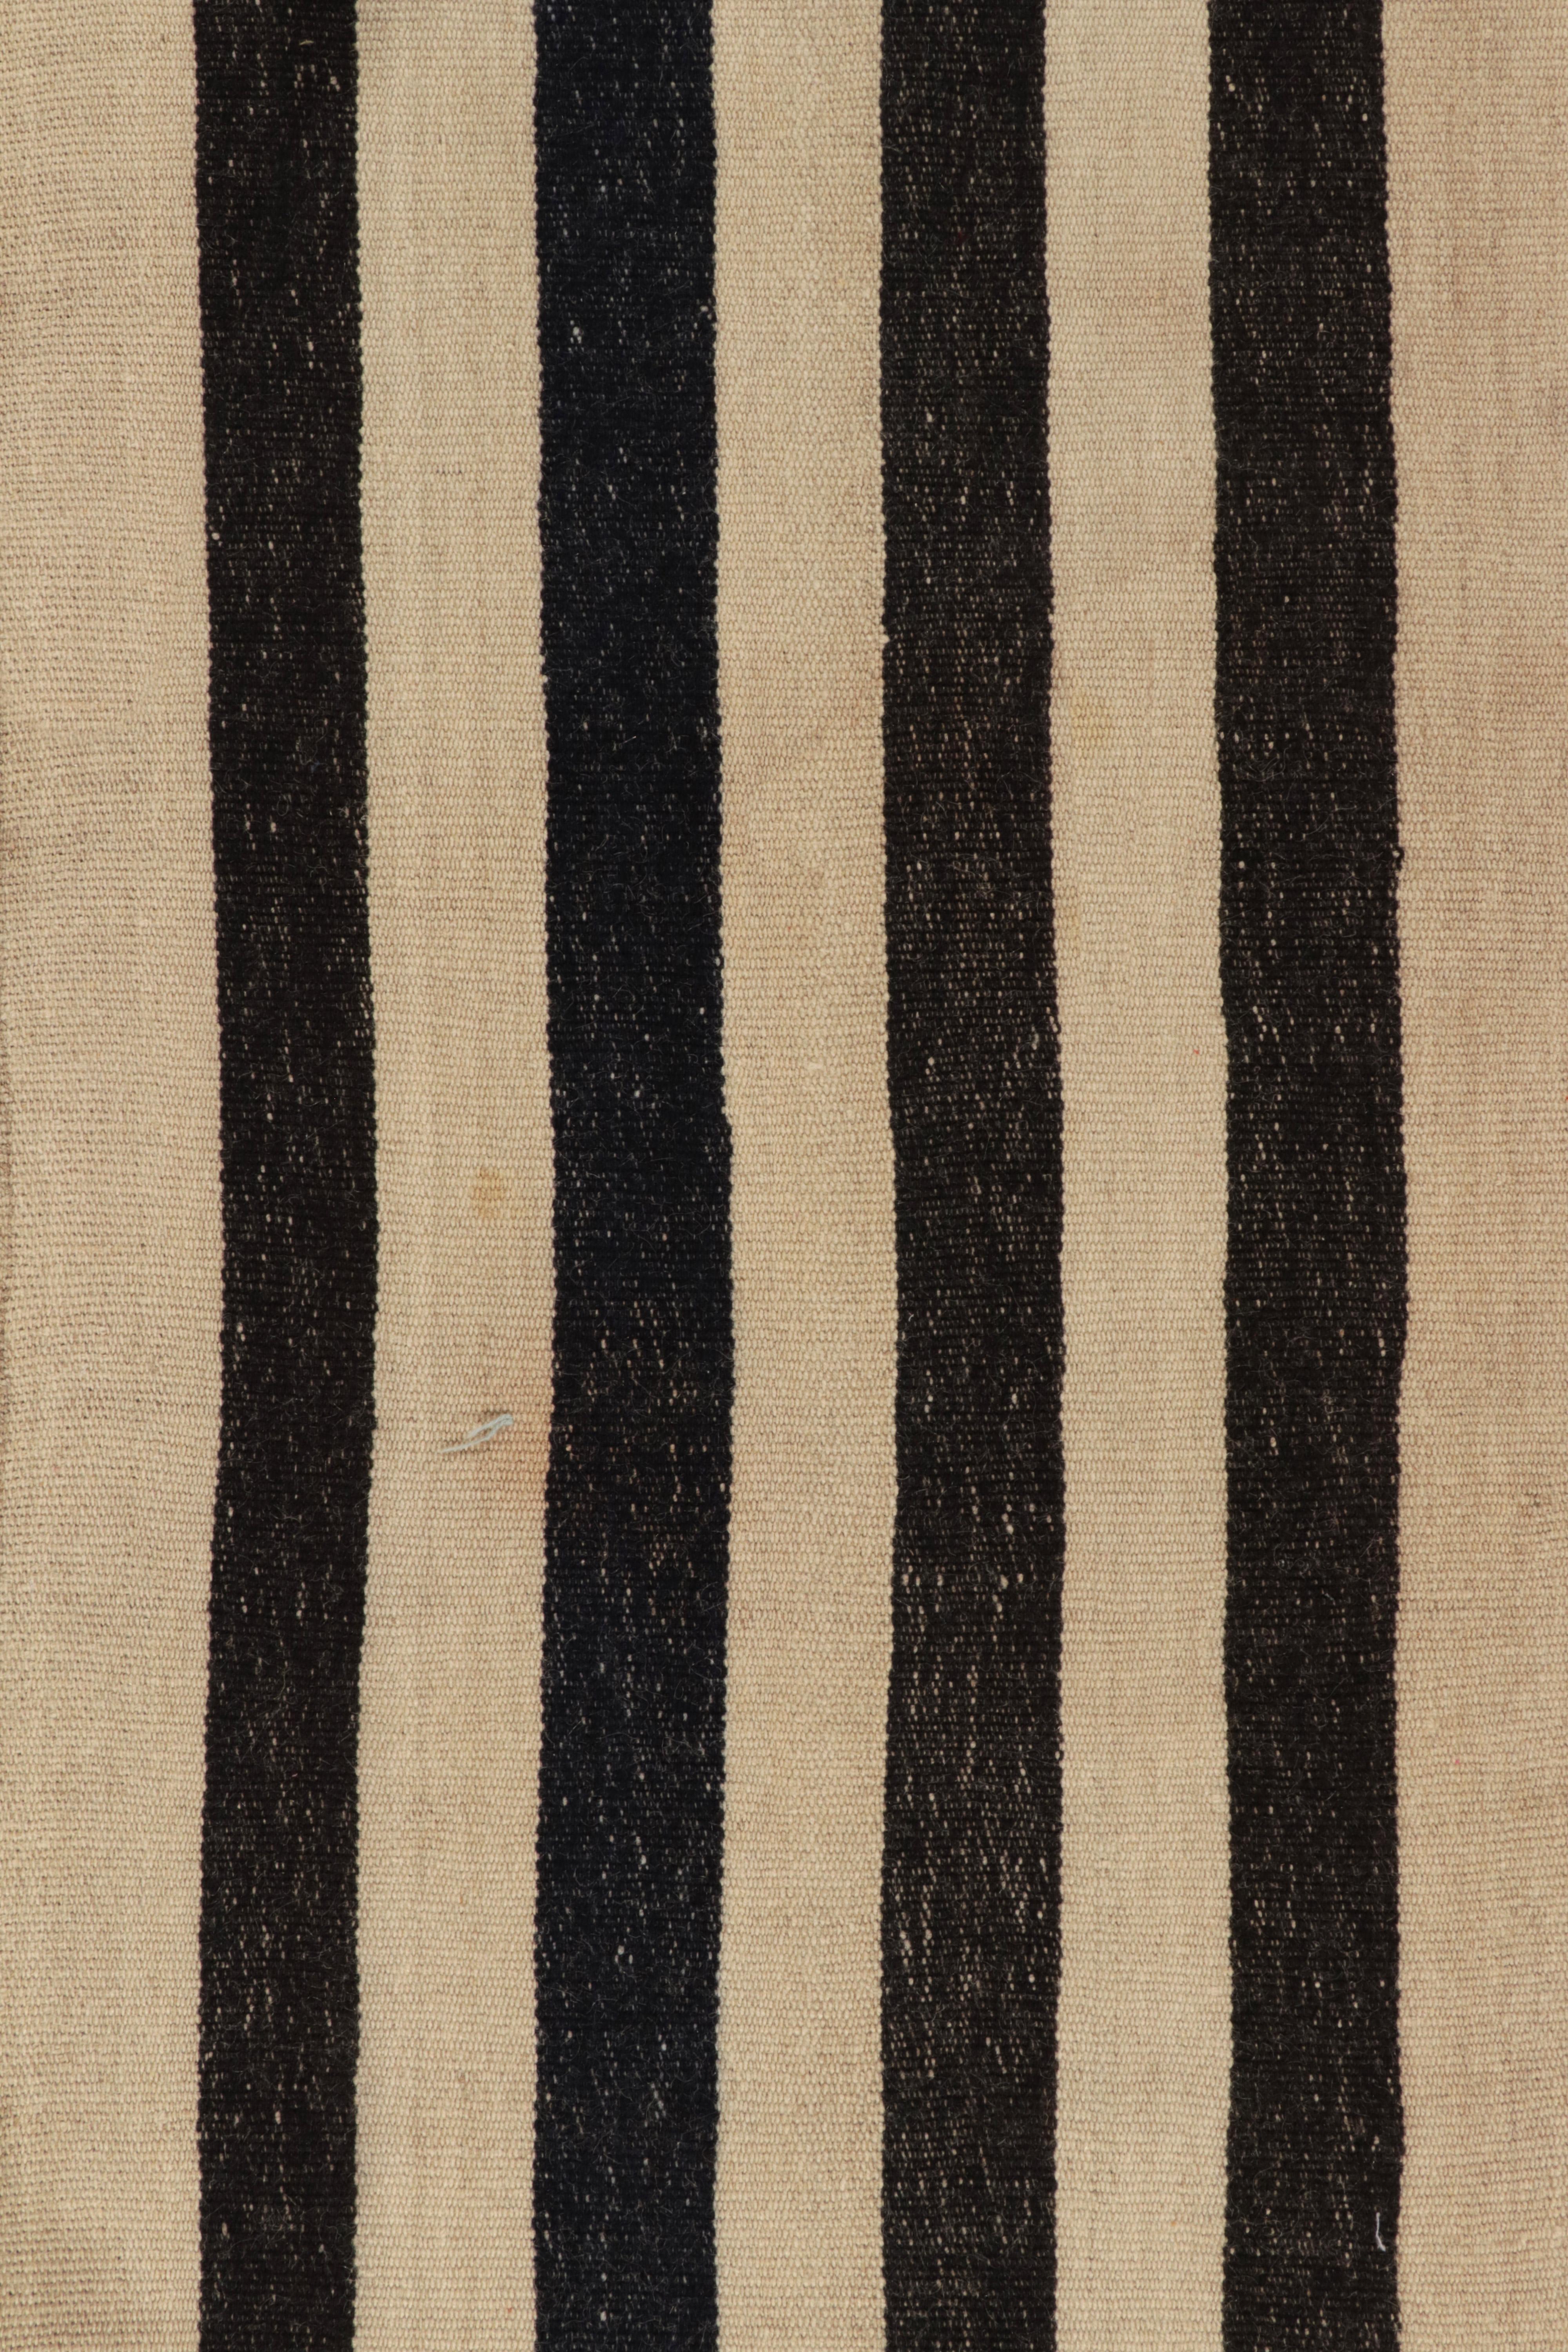 Wool Vintage Turkish Kilim Rug in Beige-Brown & Black Stripe Pattern by Rug & Kilim For Sale